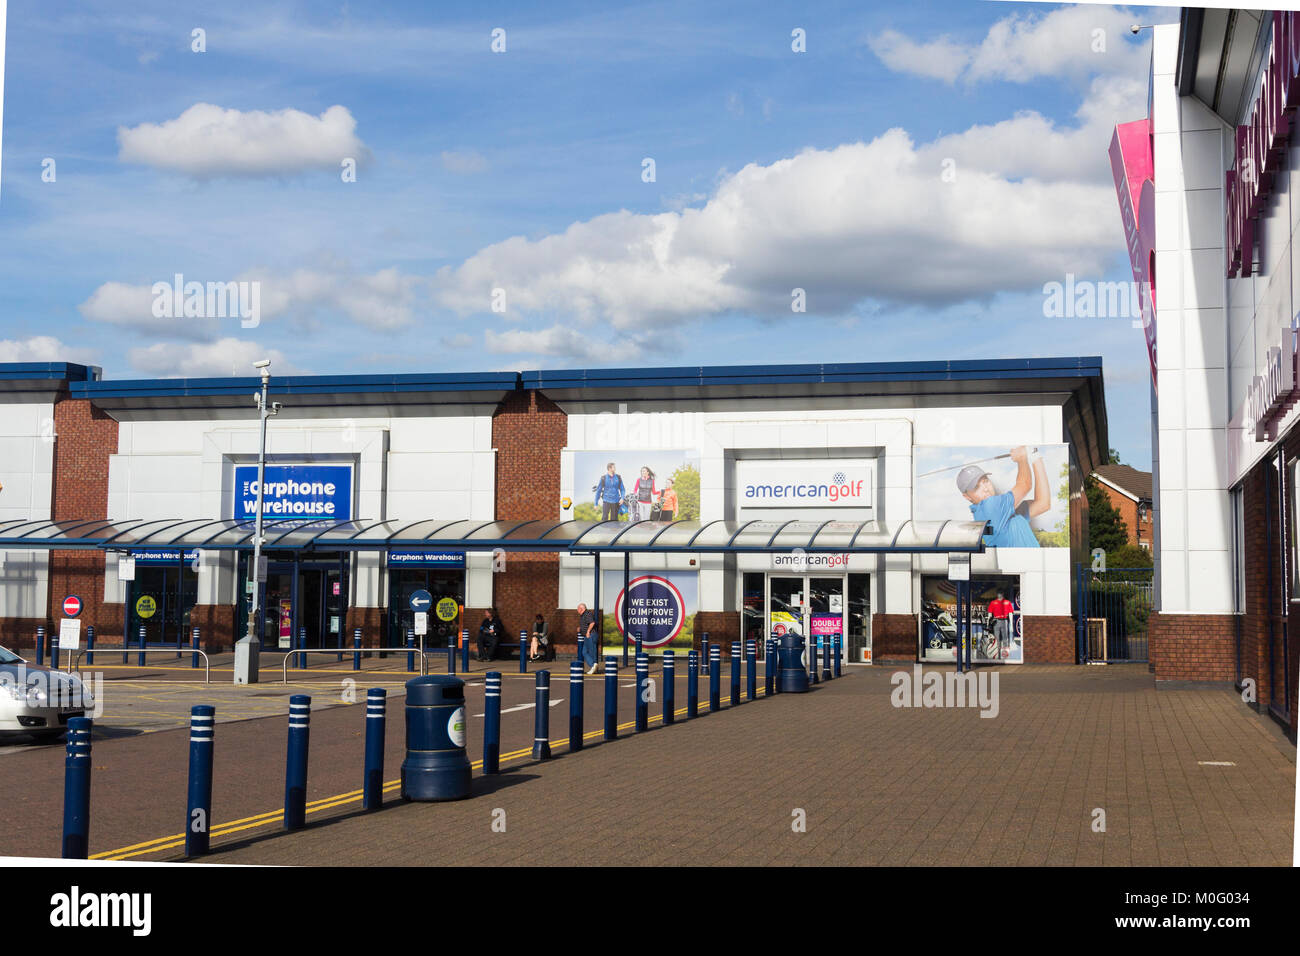 American Golf e Carphone Warehouse presso i negozi retail Middlebrook e leisure park, Horwich, vicino a Bolton. Foto Stock